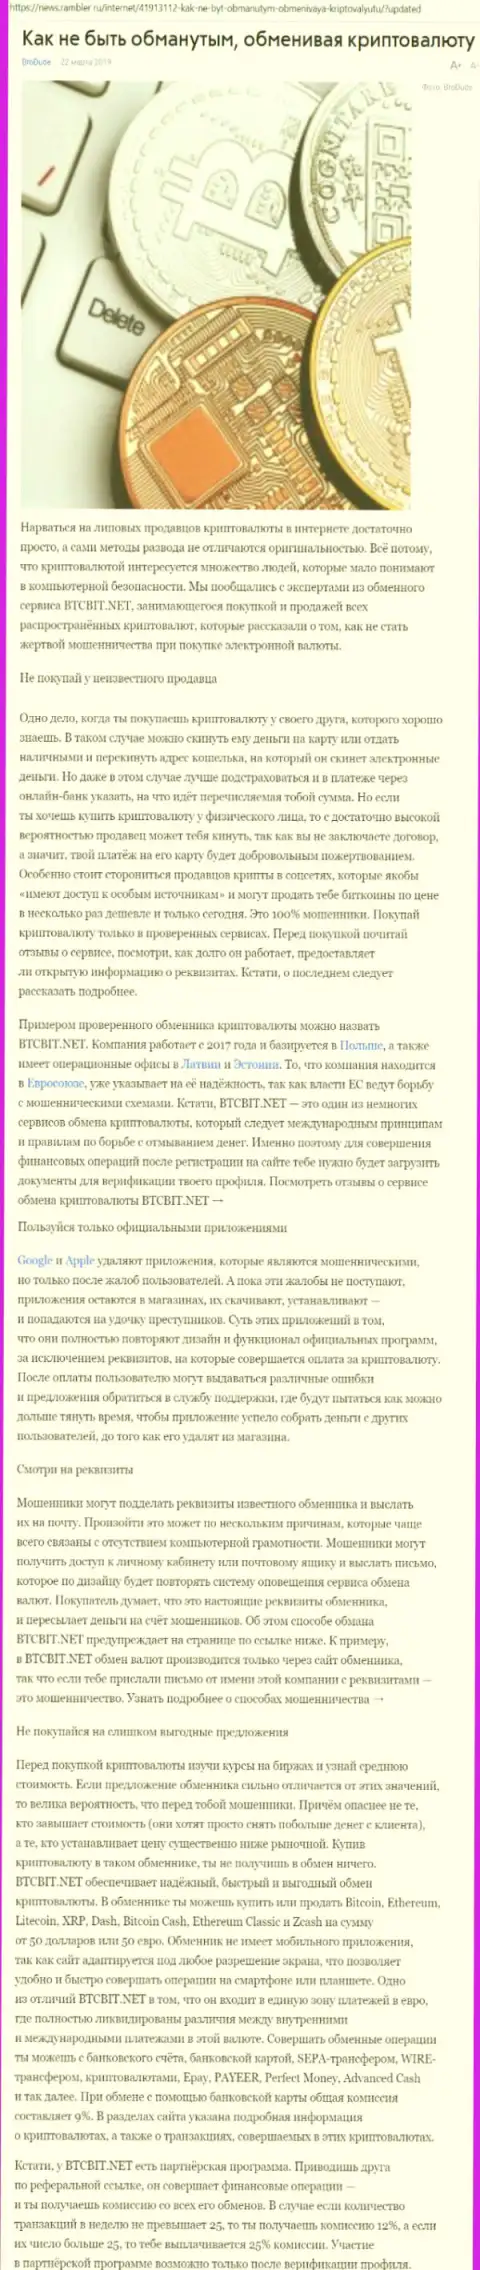 Статья об онлайн-обменнике БТЦБИТ на news rambler ru